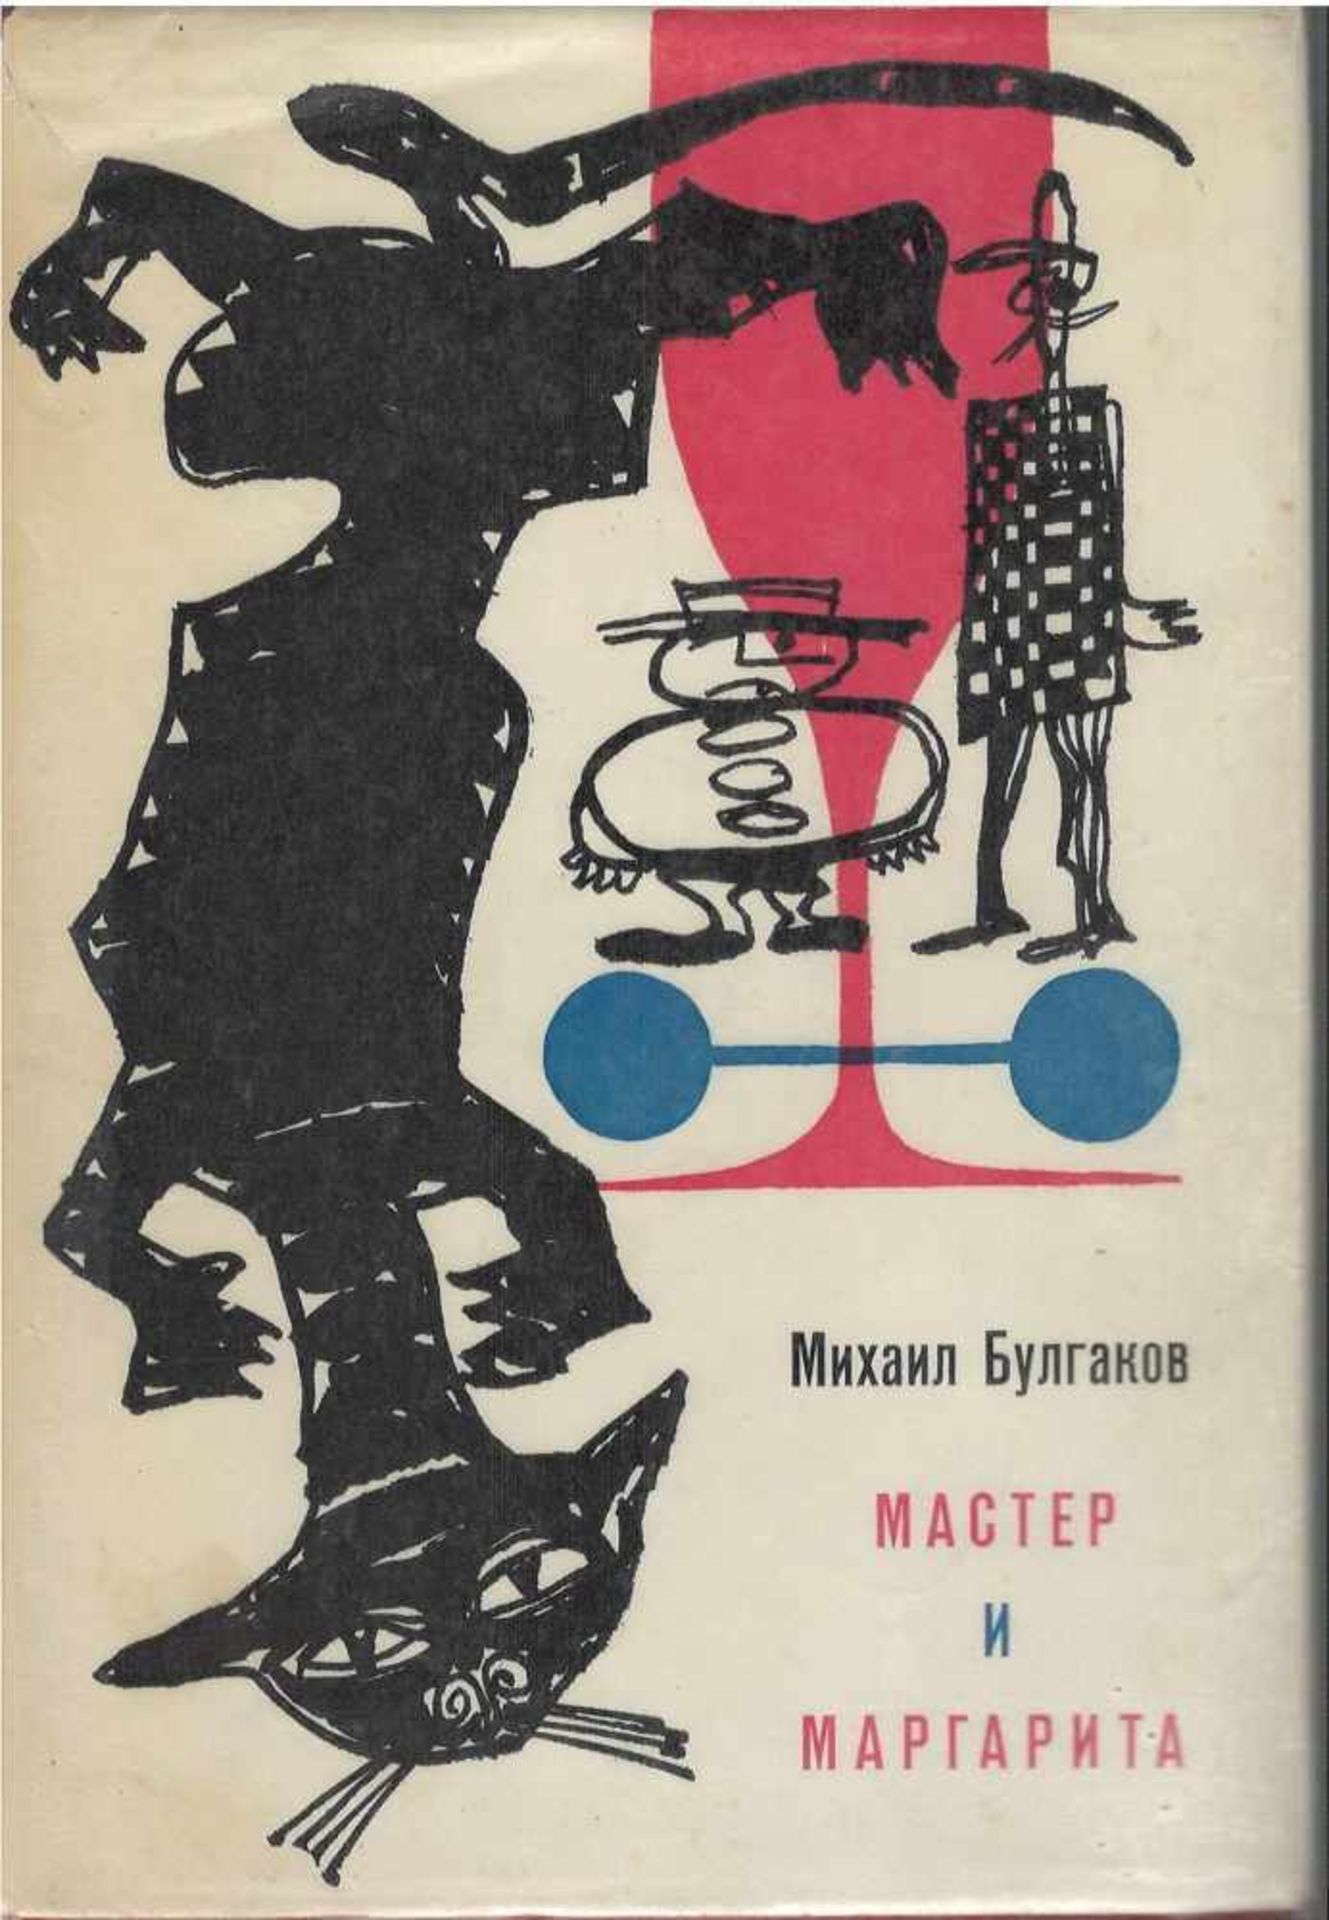 Bulgakov, M. The Master and Margarita: Novel / Mikhail Bulgakov; Illustrated cover by R.M. - 2d